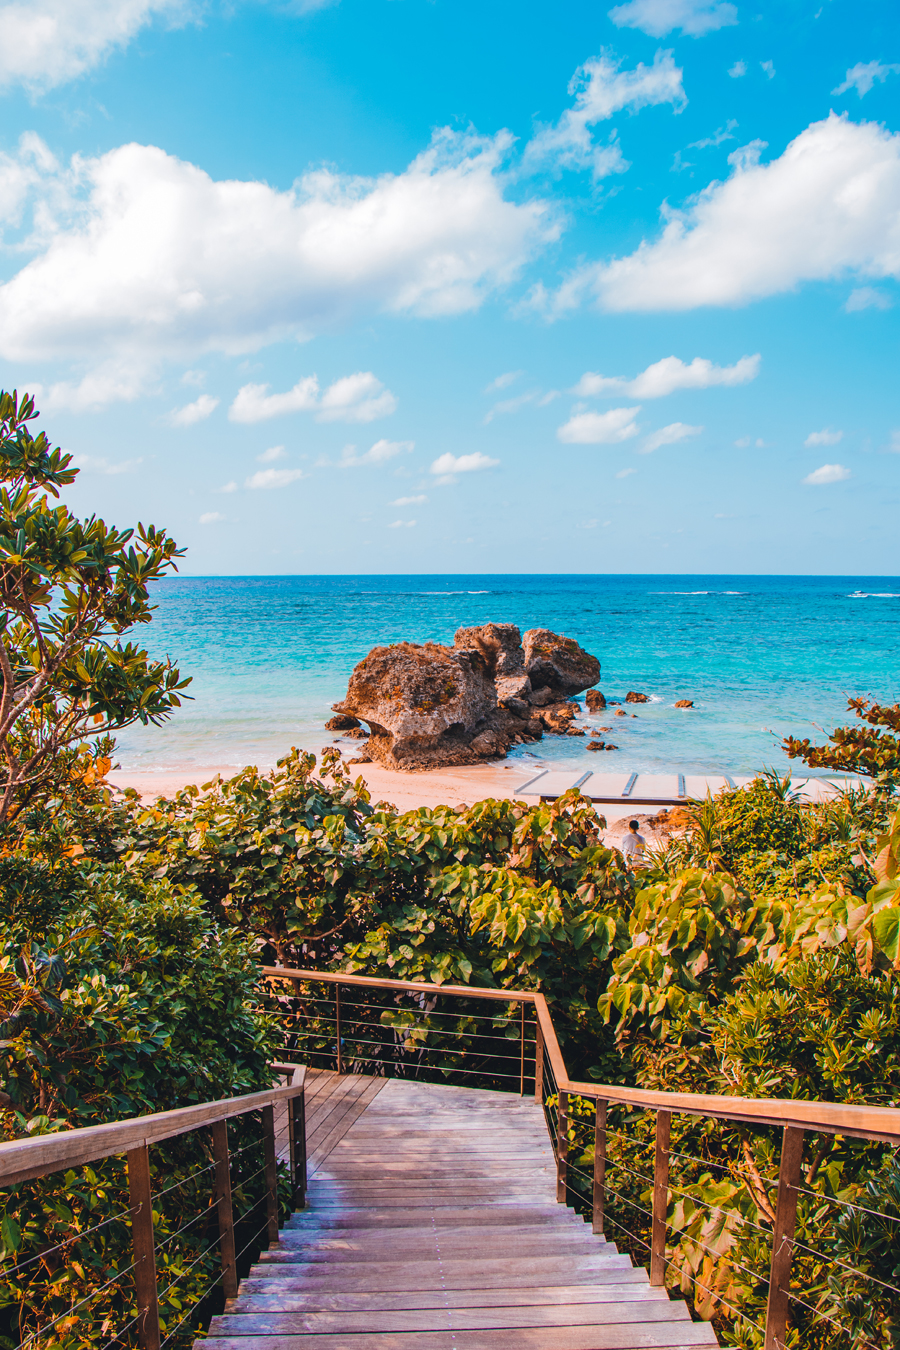 Beaches in Okinawa